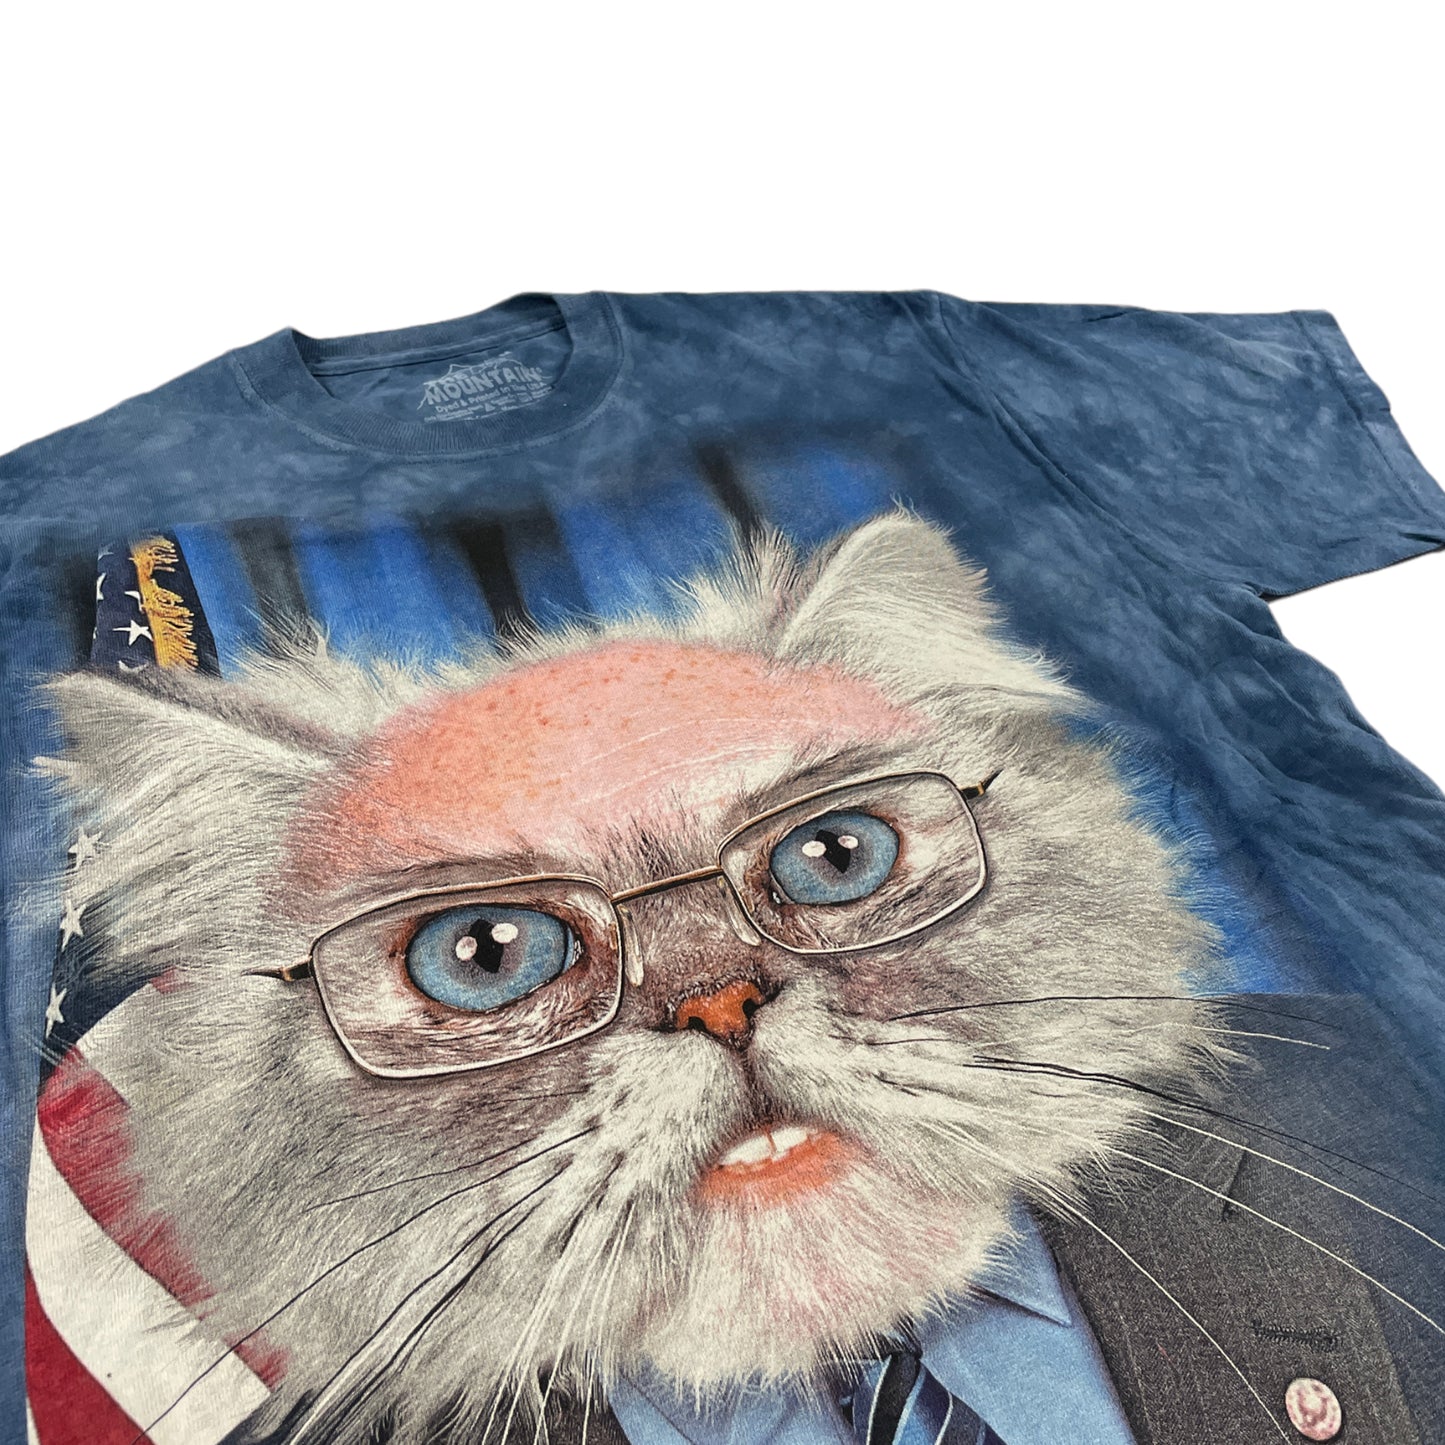 Katzenpräsident T-Shirt